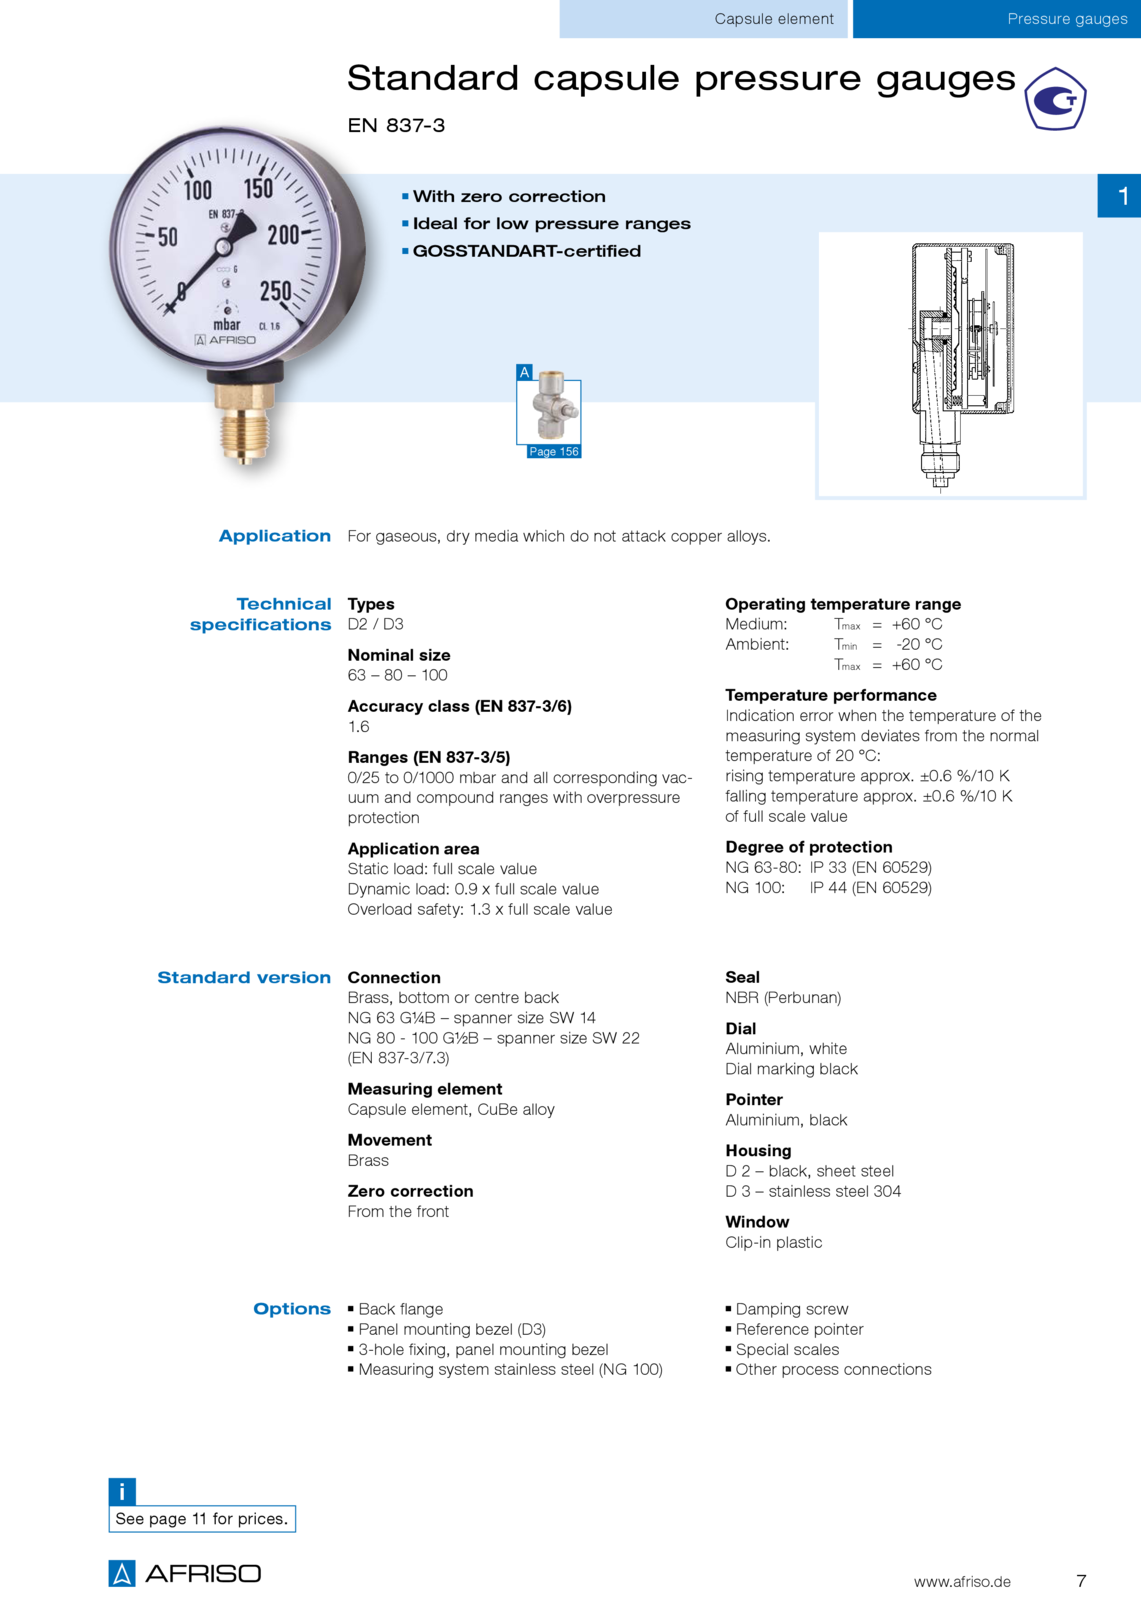 Afriso标准D3型胶囊压力表